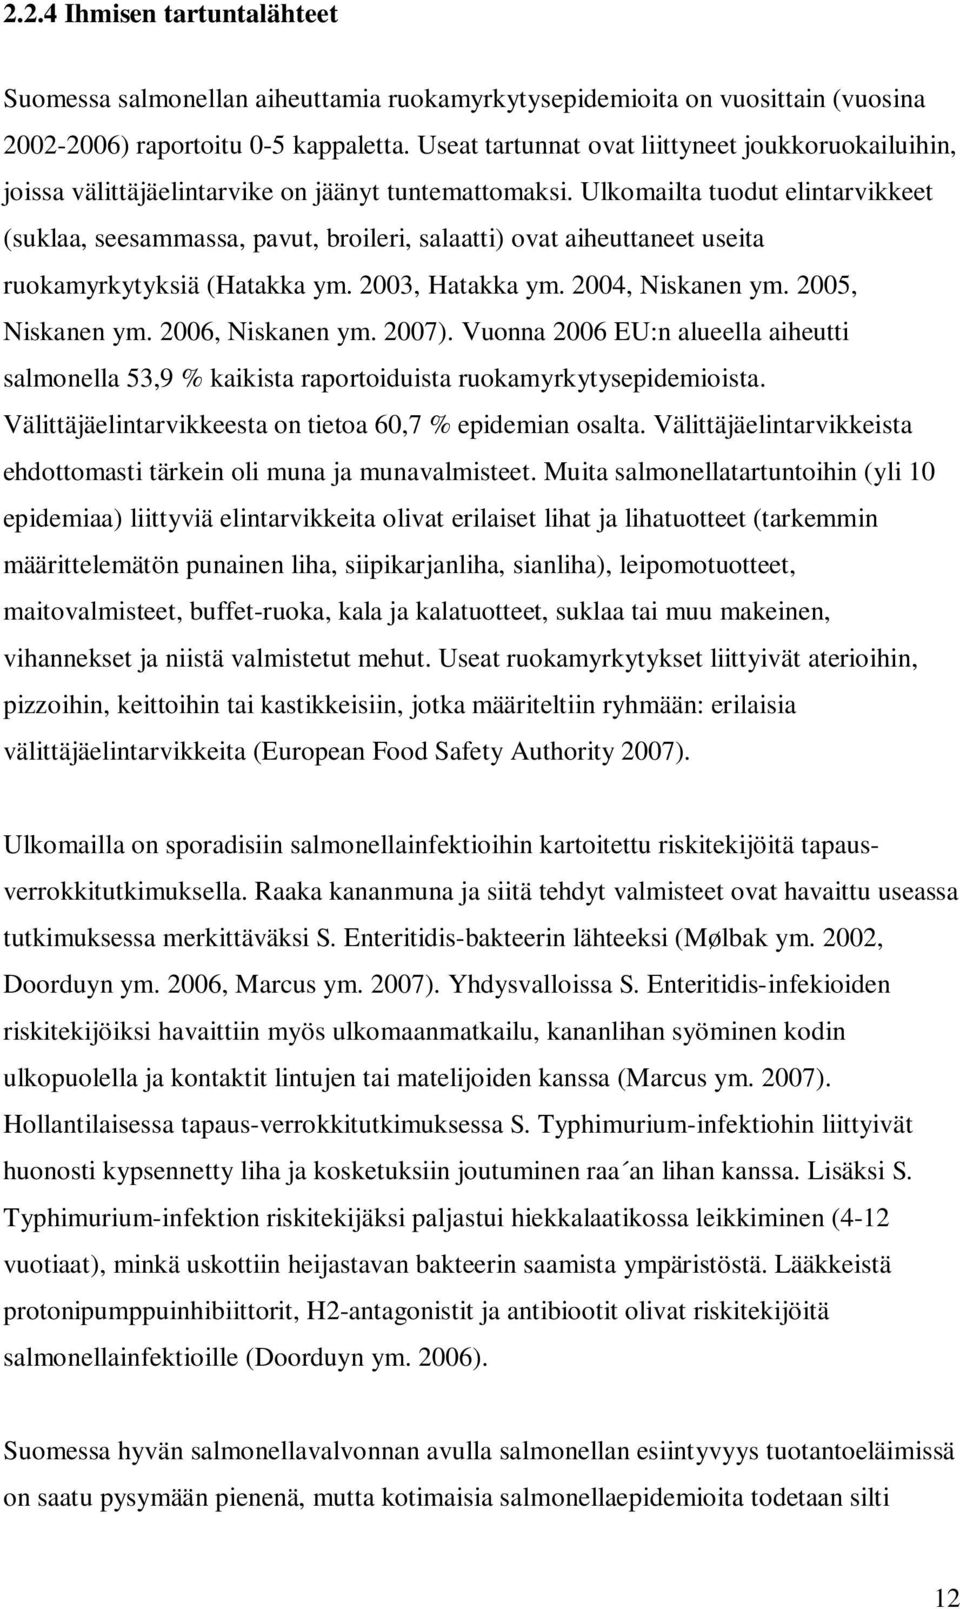 Ulkomailta tuodut elintarvikkeet (suklaa, seesammassa, pavut, broileri, salaatti) ovat aiheuttaneet useita ruokamyrkytyksiä (Hatakka ym. 2003, Hatakka ym. 2004, Niskanen ym. 2005, Niskanen ym.